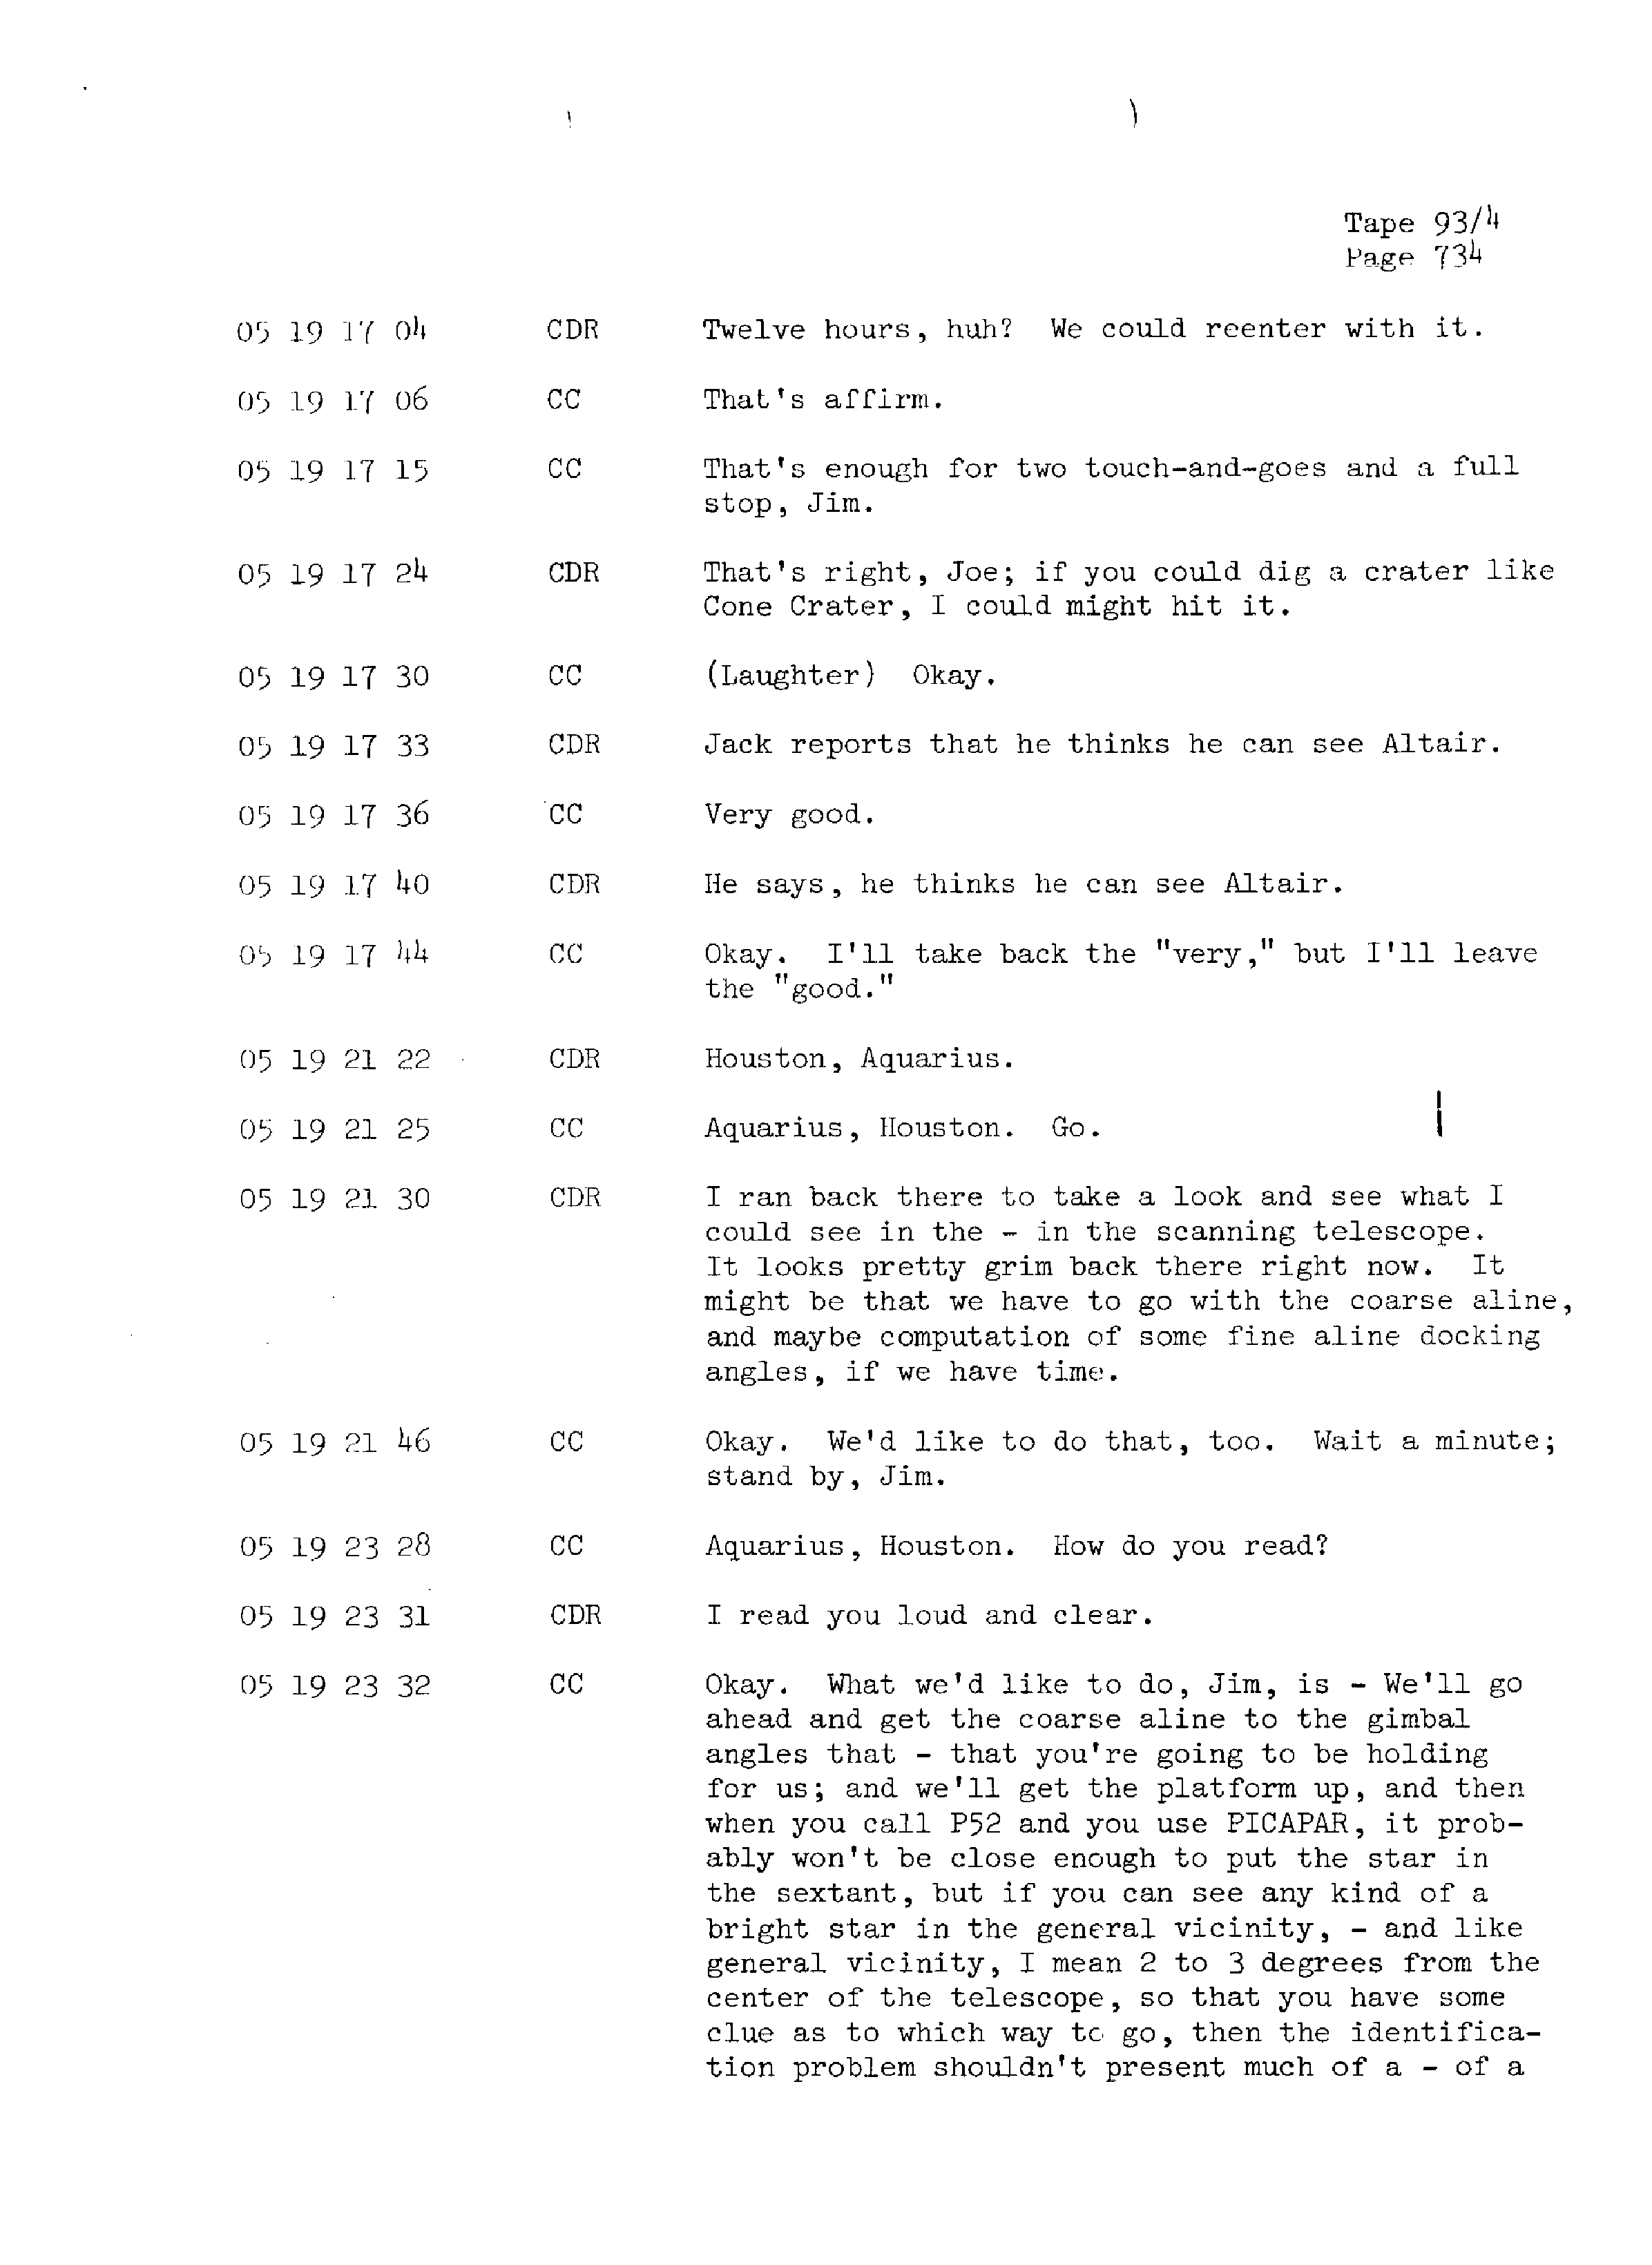 Page 741 of Apollo 13’s original transcript